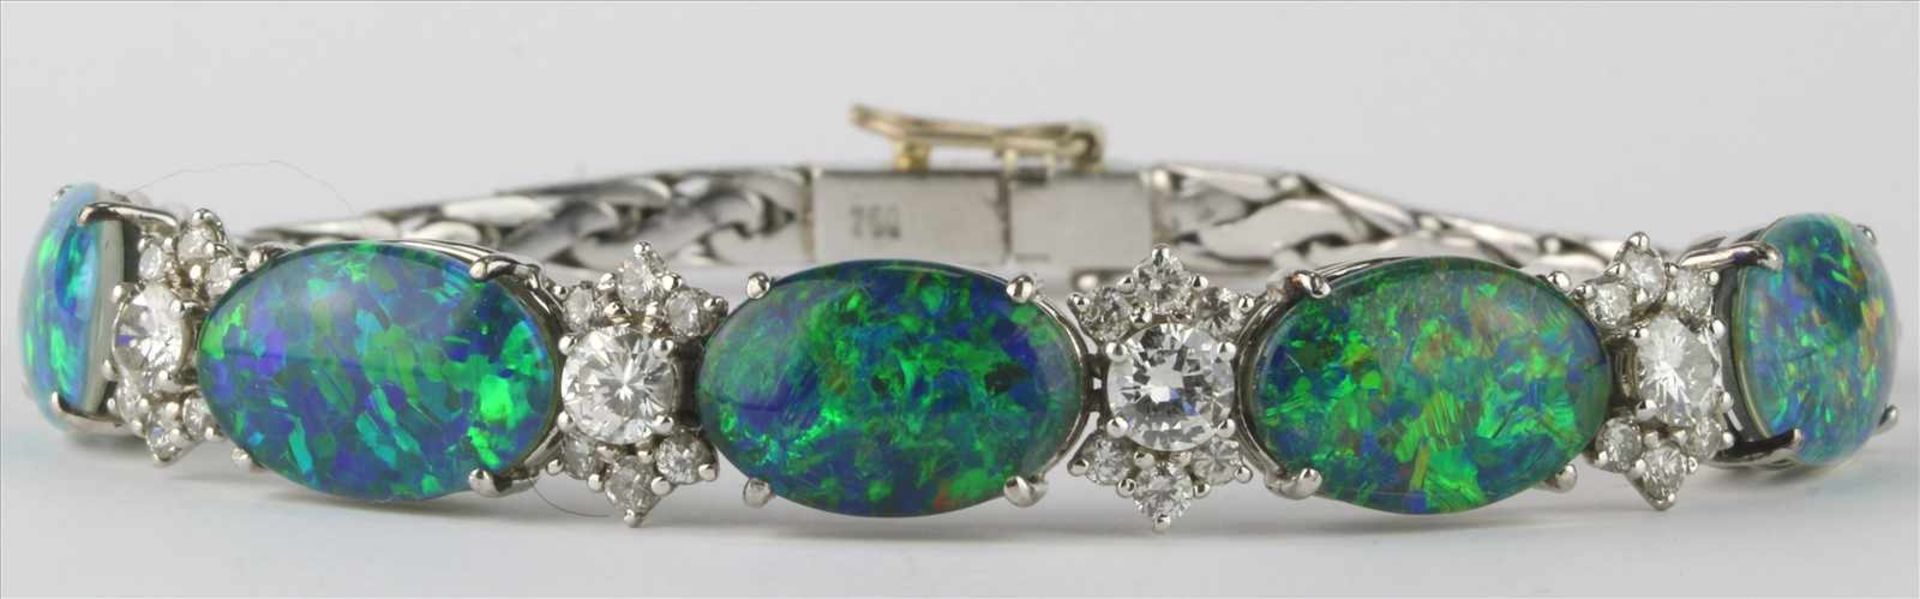 Opal Brillant ArmbandExklusive Designerarbeit 1970-er Jahre. WG 750. Fünf Opaldoubletten und 4